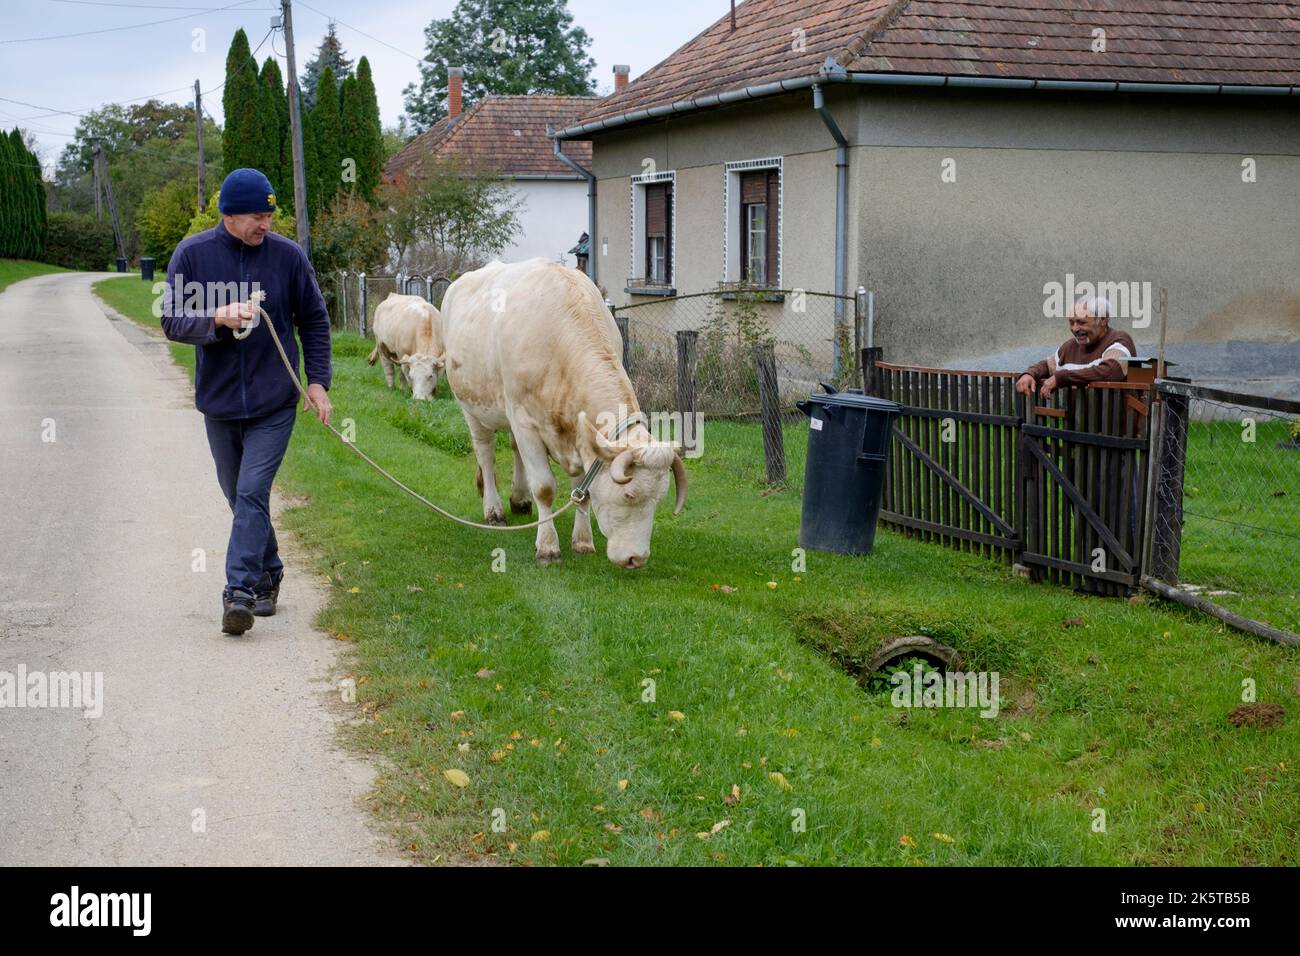 homme local marchant ses deux vaches laitières dans le pâturage à travers un petit hameau rural voie zala county hongrie Banque D'Images